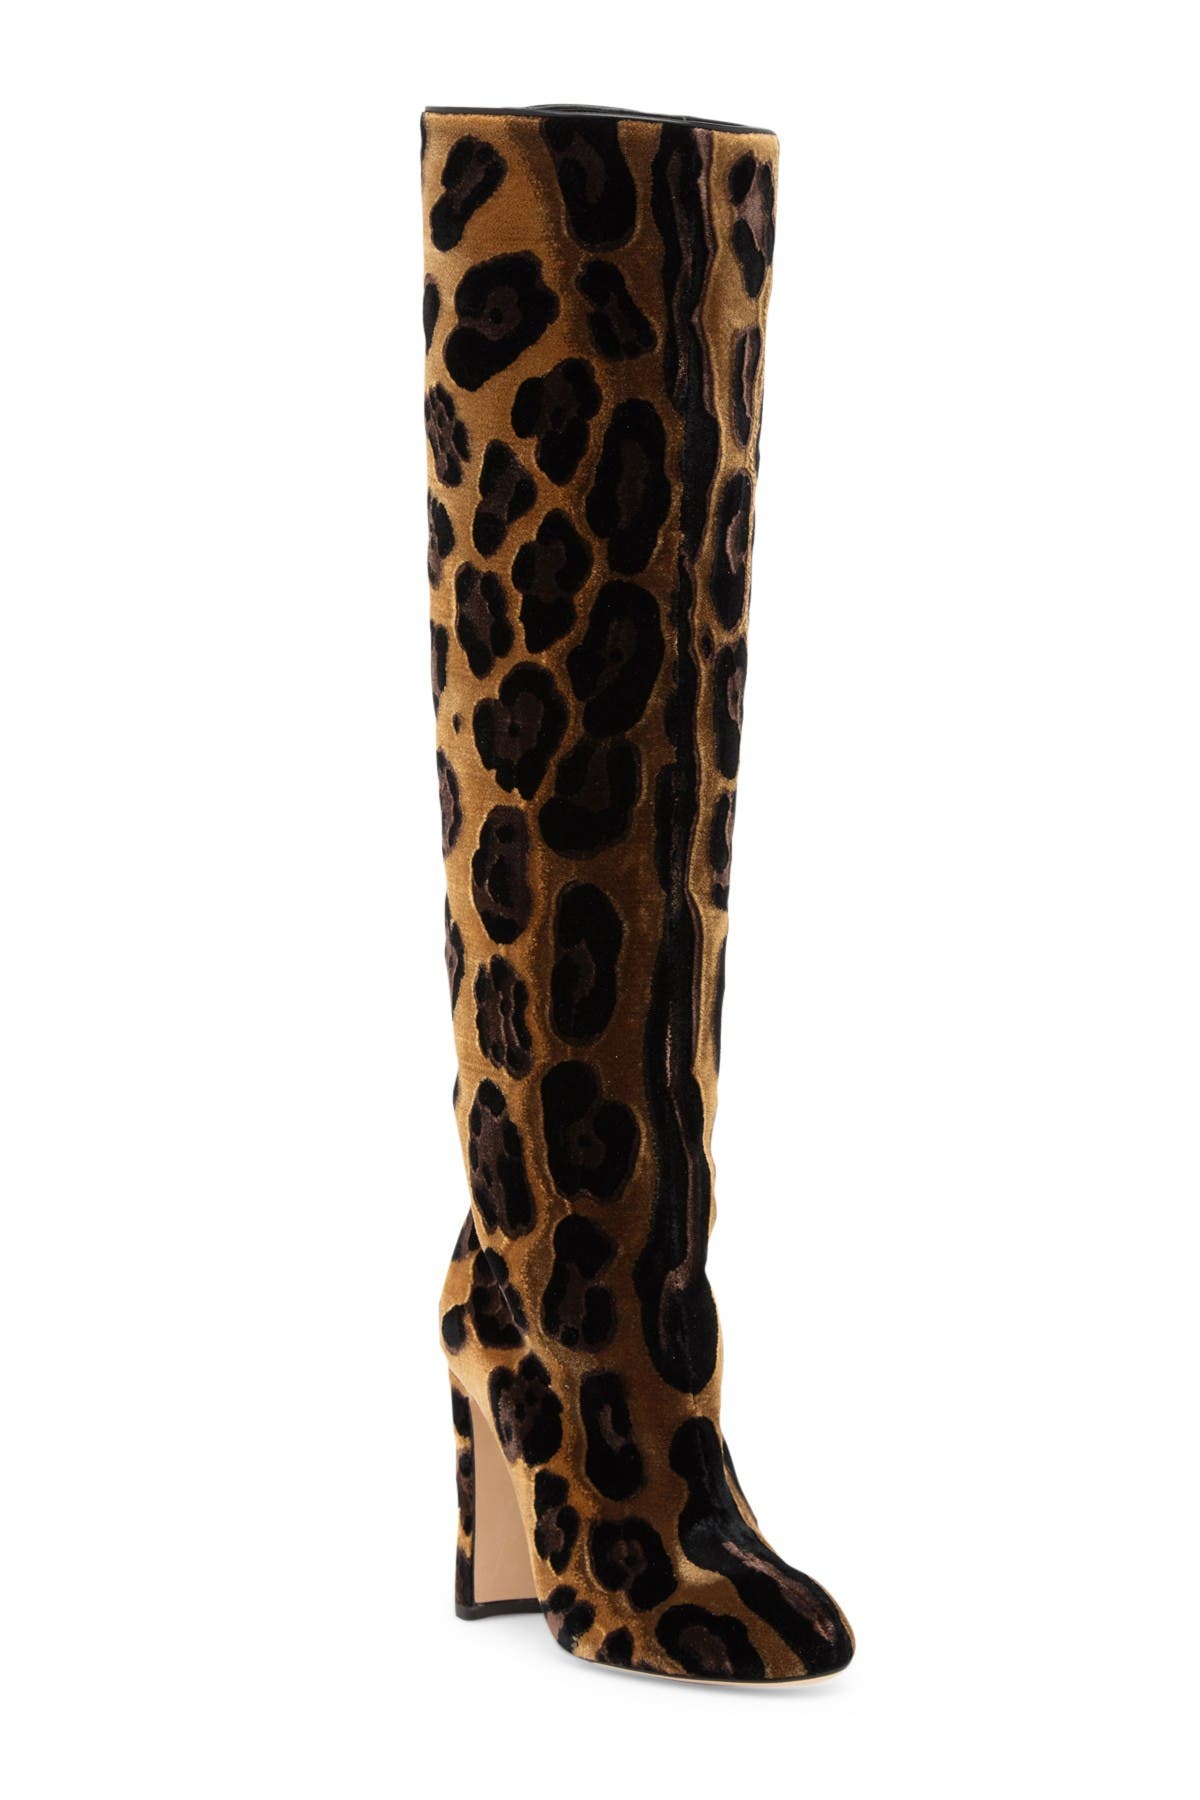 dolce gabbana leopard boots